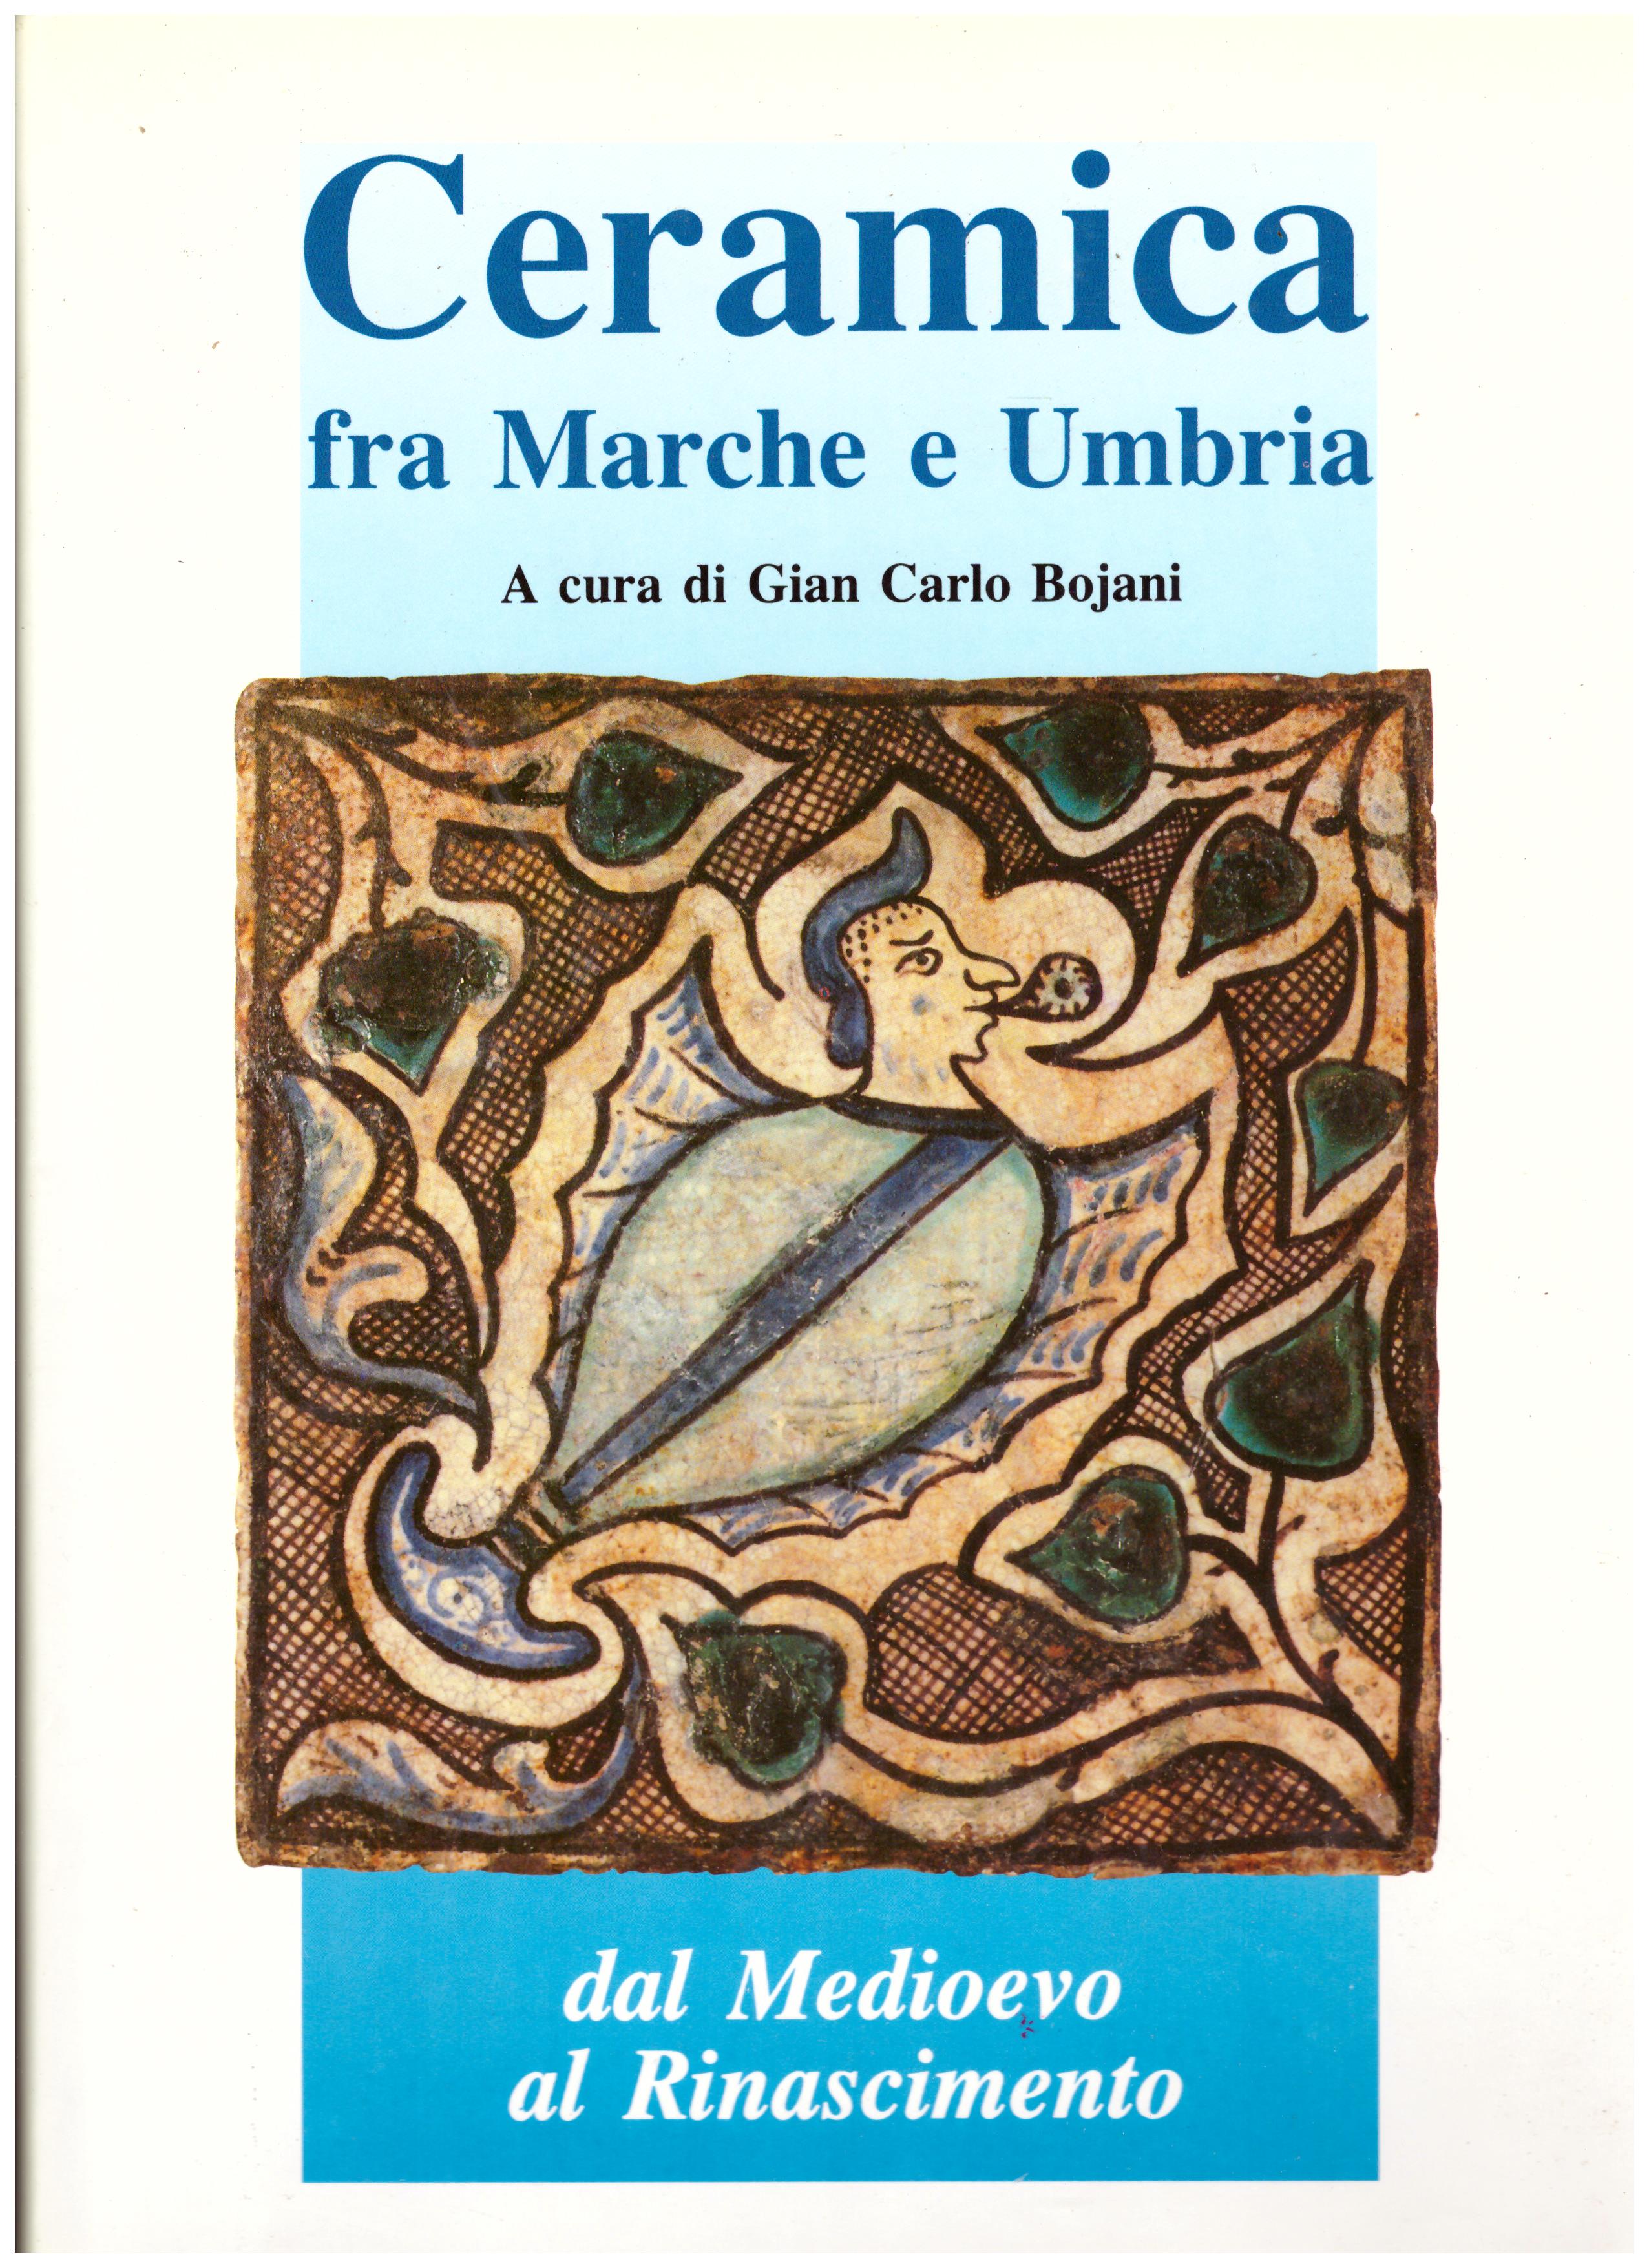 Titolo: Ceramica fra Marche e Umbria     Autore: AA.VV. A cura di Gian Carlo Bojani    Editore: Publialfa, Faenza 1992